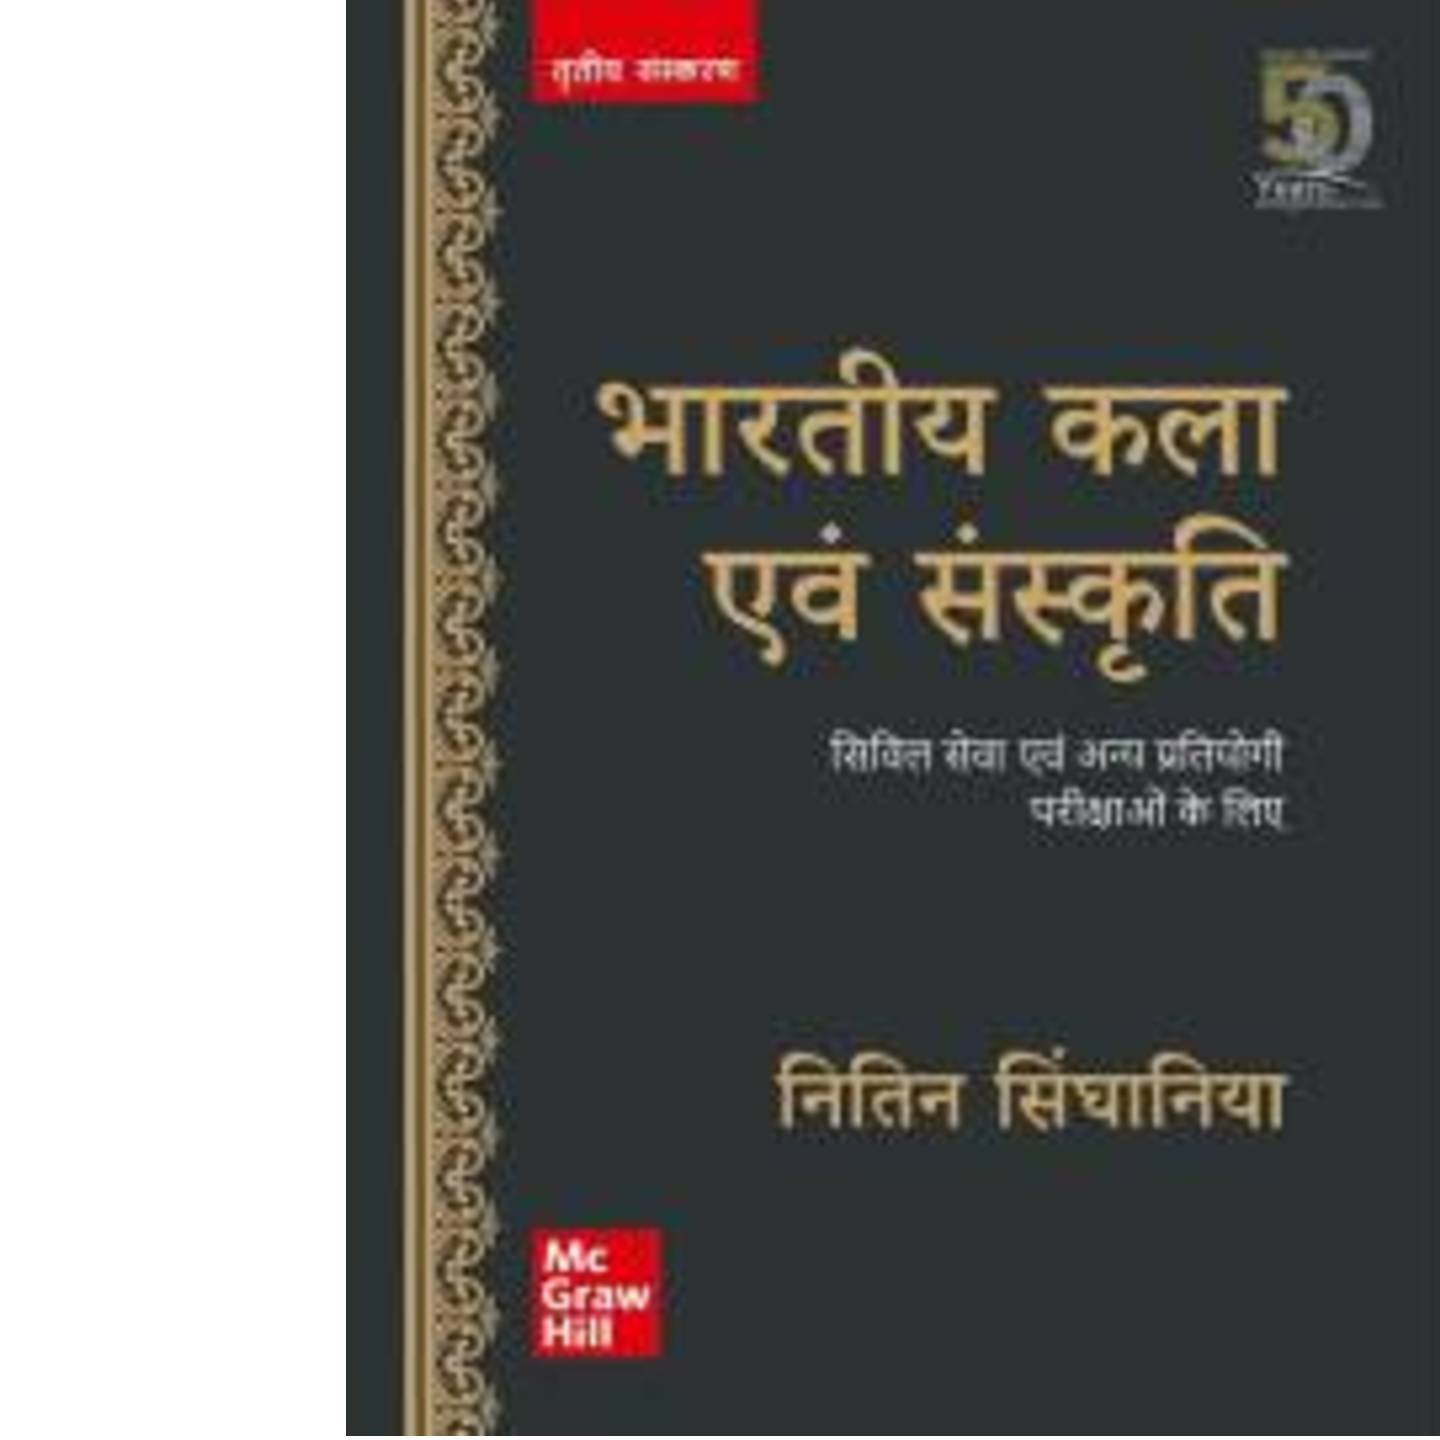 Bharitya Kala Evam Sanskriti NITIN SINGHANIA